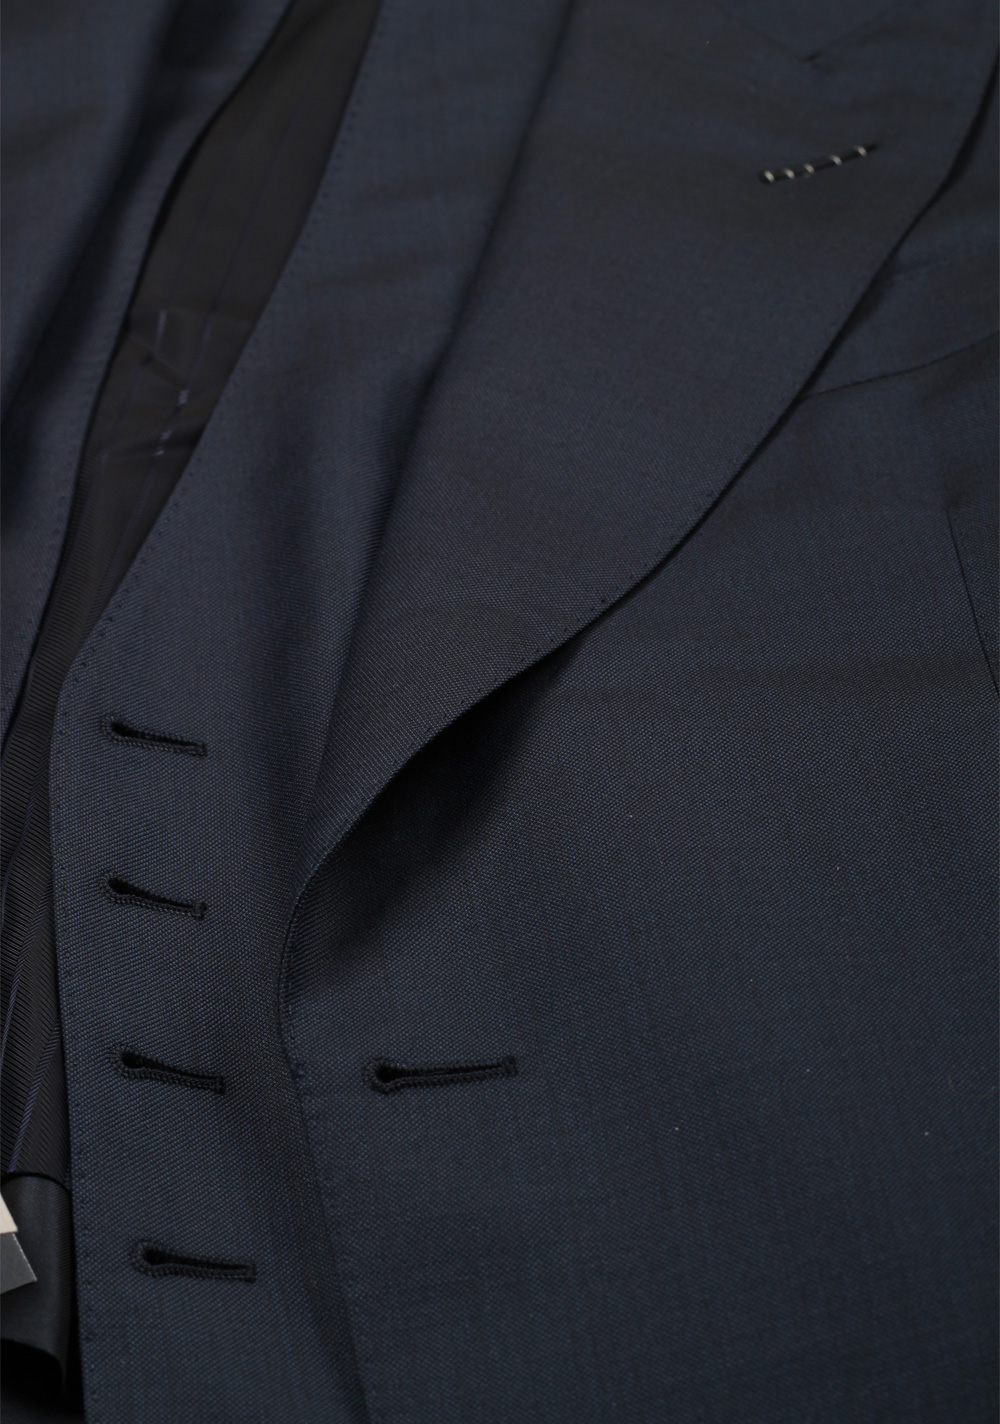 TOM FORD Shelton Blue 3 Piece Suit Size 46C / 36S U.S. | Costume Limité